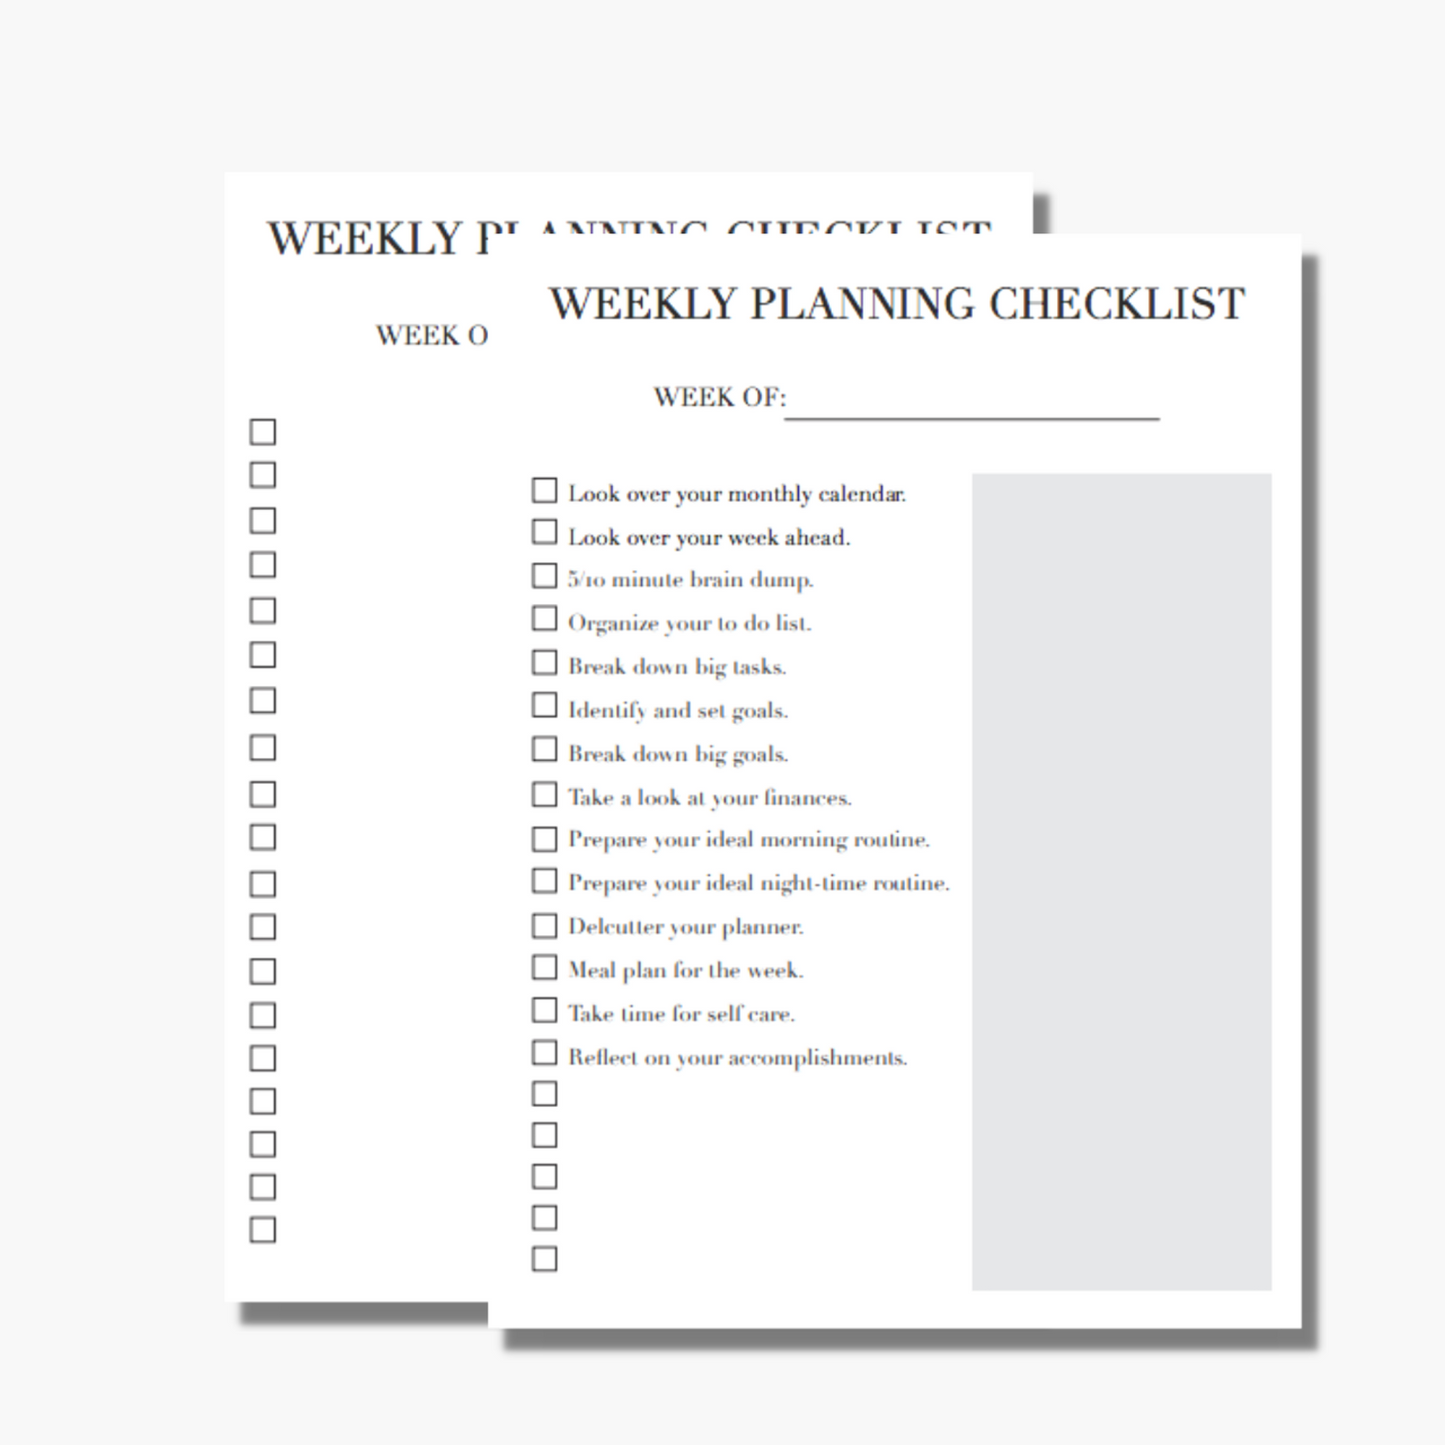 Weekly Planning Checklist